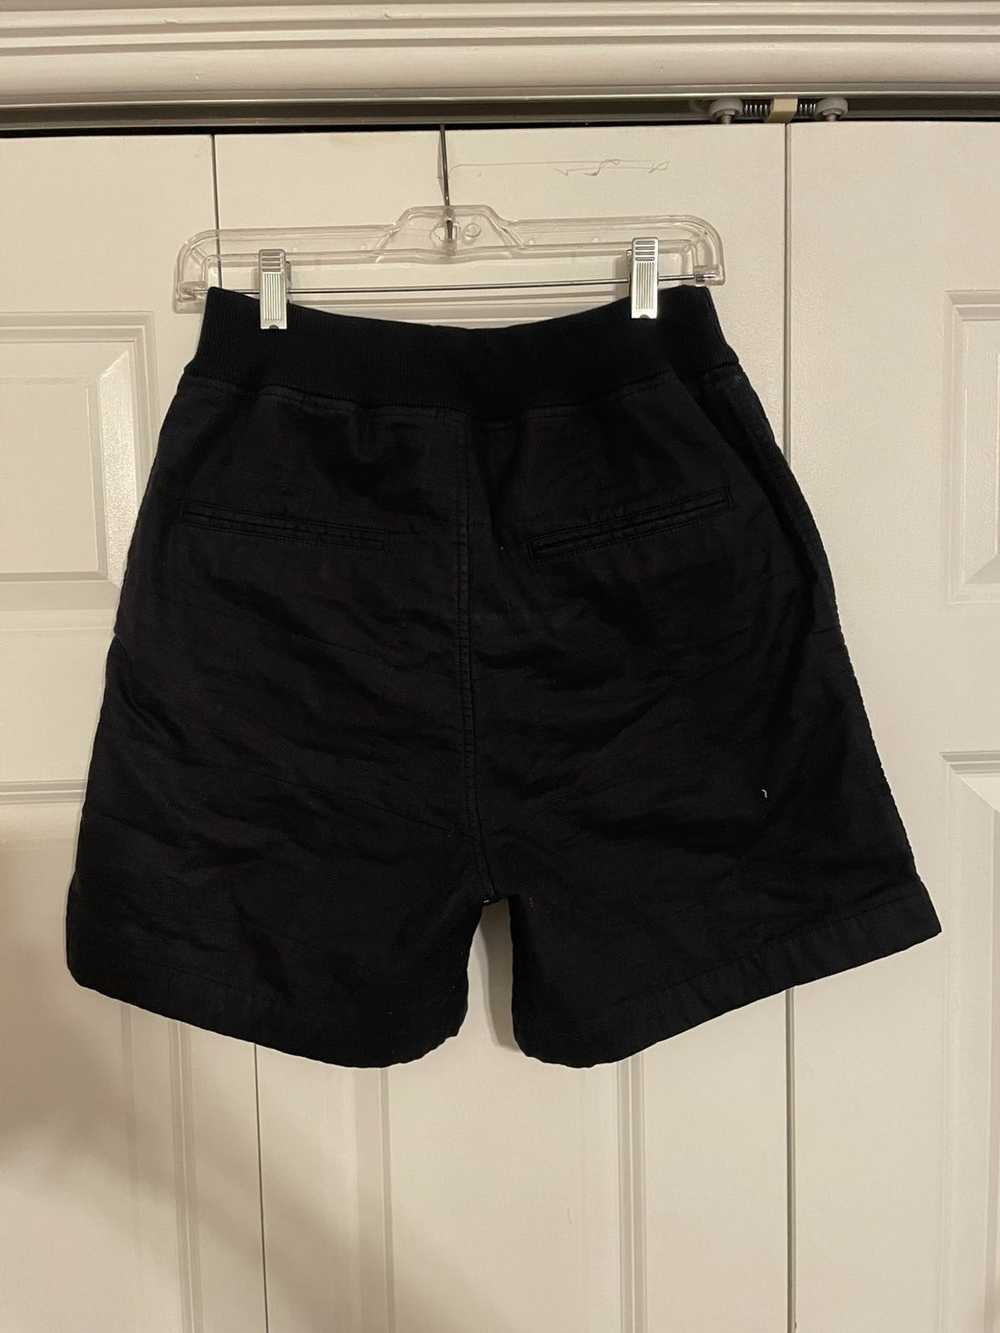 Marni Marni Quilted Shorts - image 3